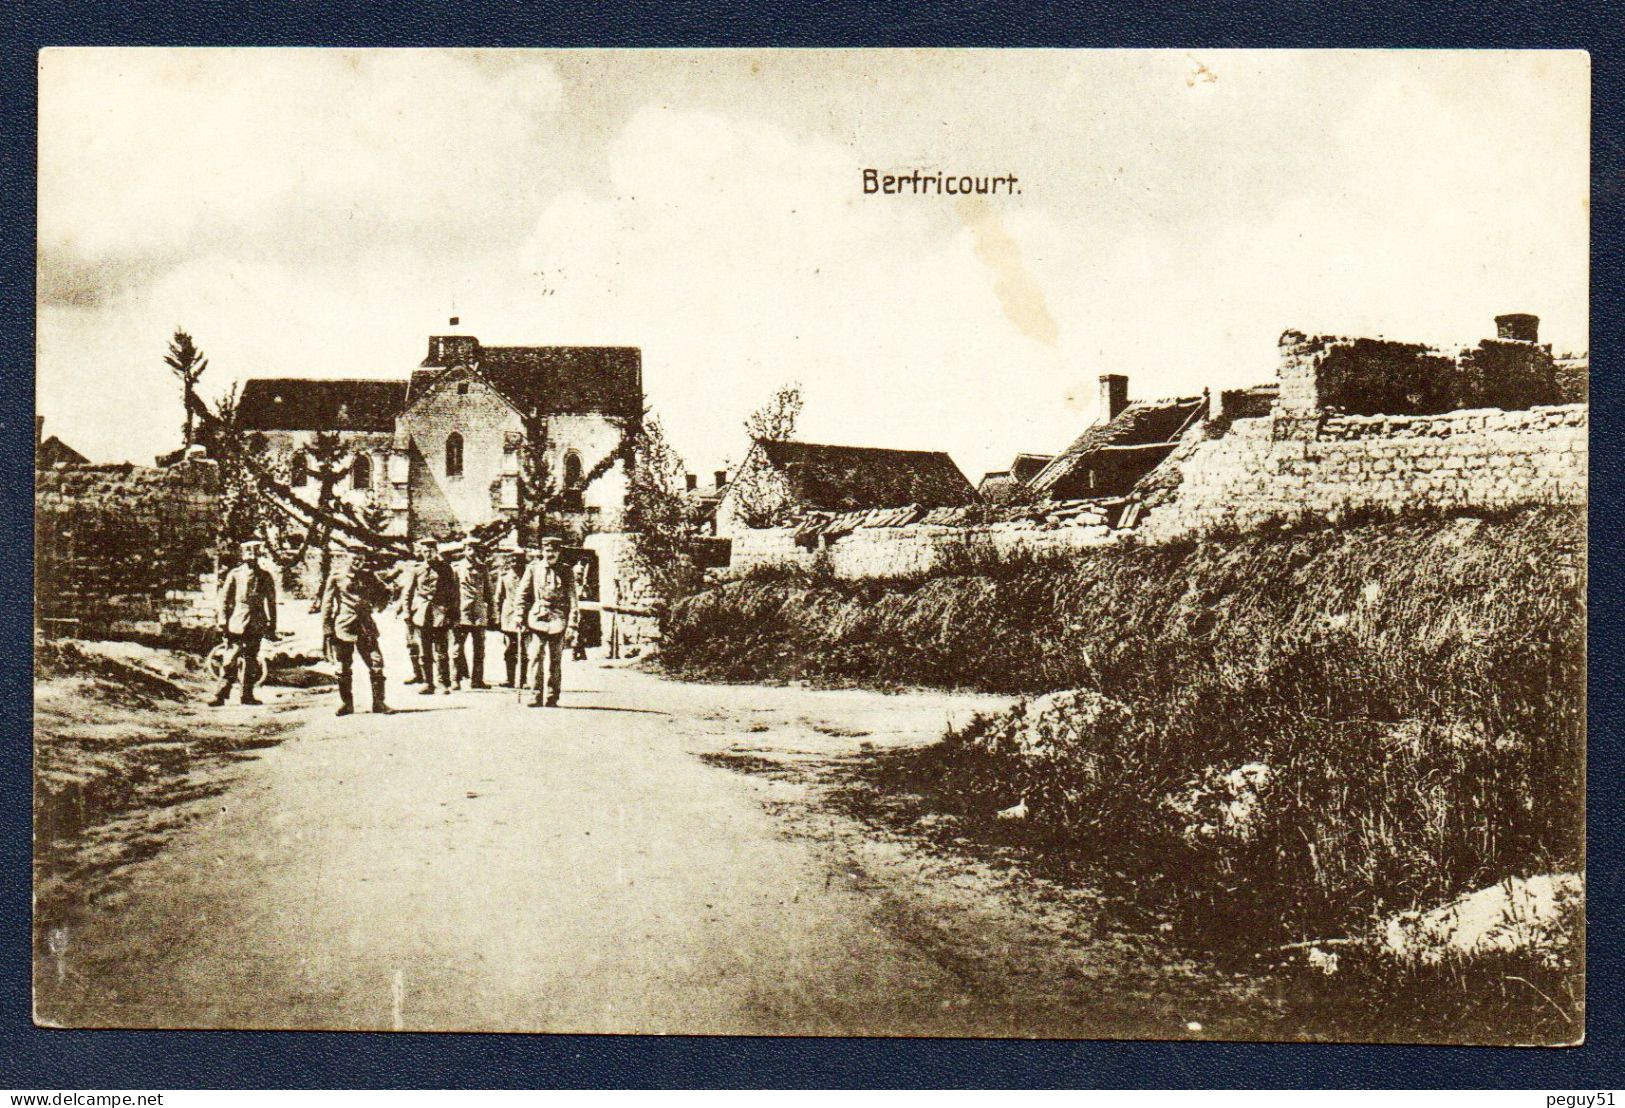 02. Bertricourt. Village Occupé Par Les  Allemands. Feldpost Der 3. K.S. - Infanterie Division Nr32. Juillet 1915 - Craonne